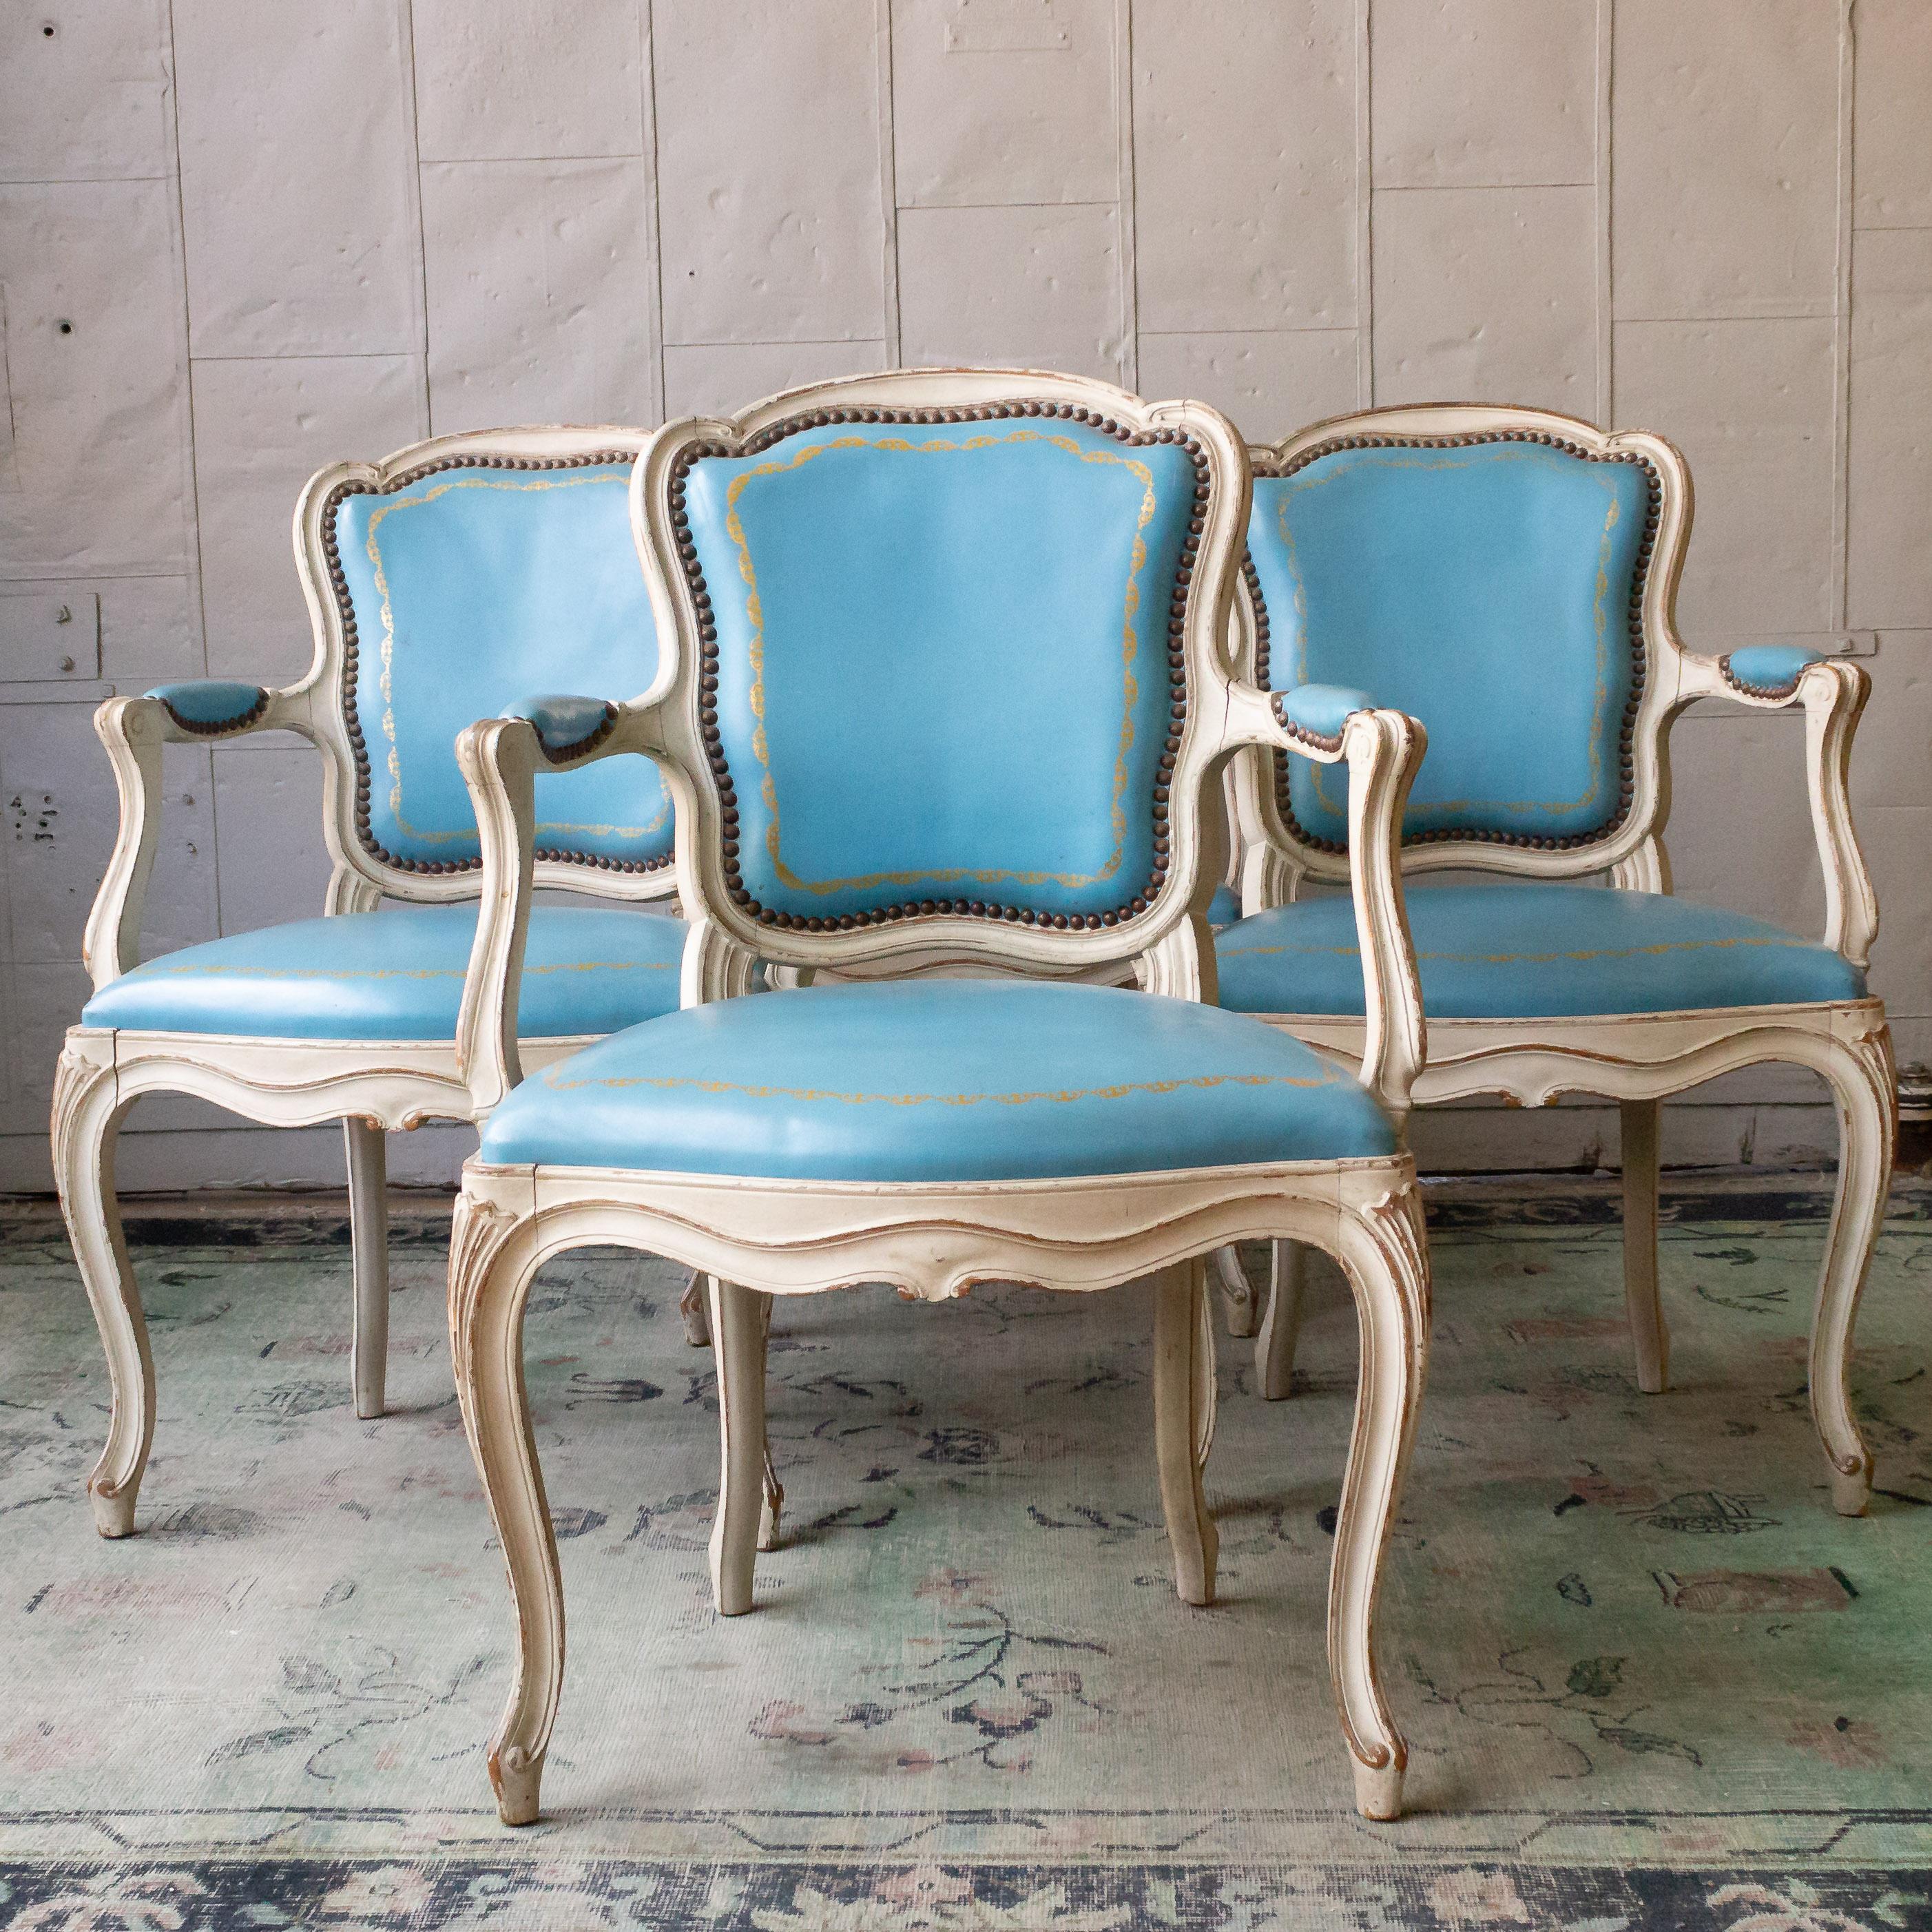 Ein eleganter Satz von vier Sesseln im Stil Louis XV in hellblauem Leder und weiß patinierten Gestellen. Mit dieser verführerischen Kombination aus klassischem französischem Design und sattblauem Lederbezug sind diese Stühle ideal, um Ihrem